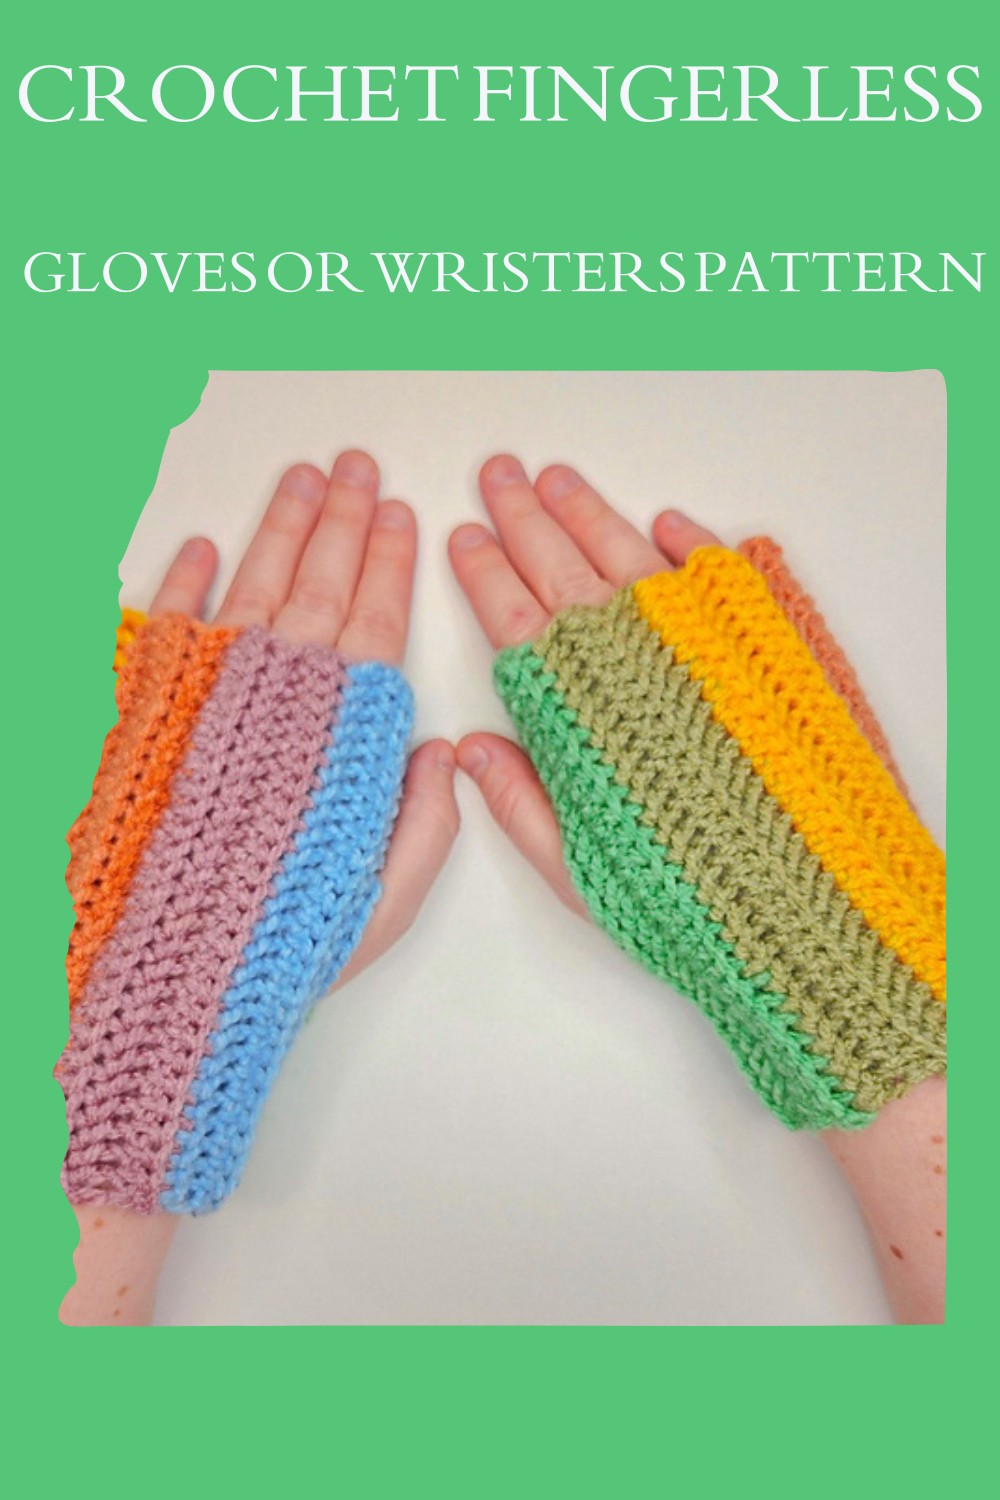  Crochet Fingerless Gloves Or Wristers Pattern